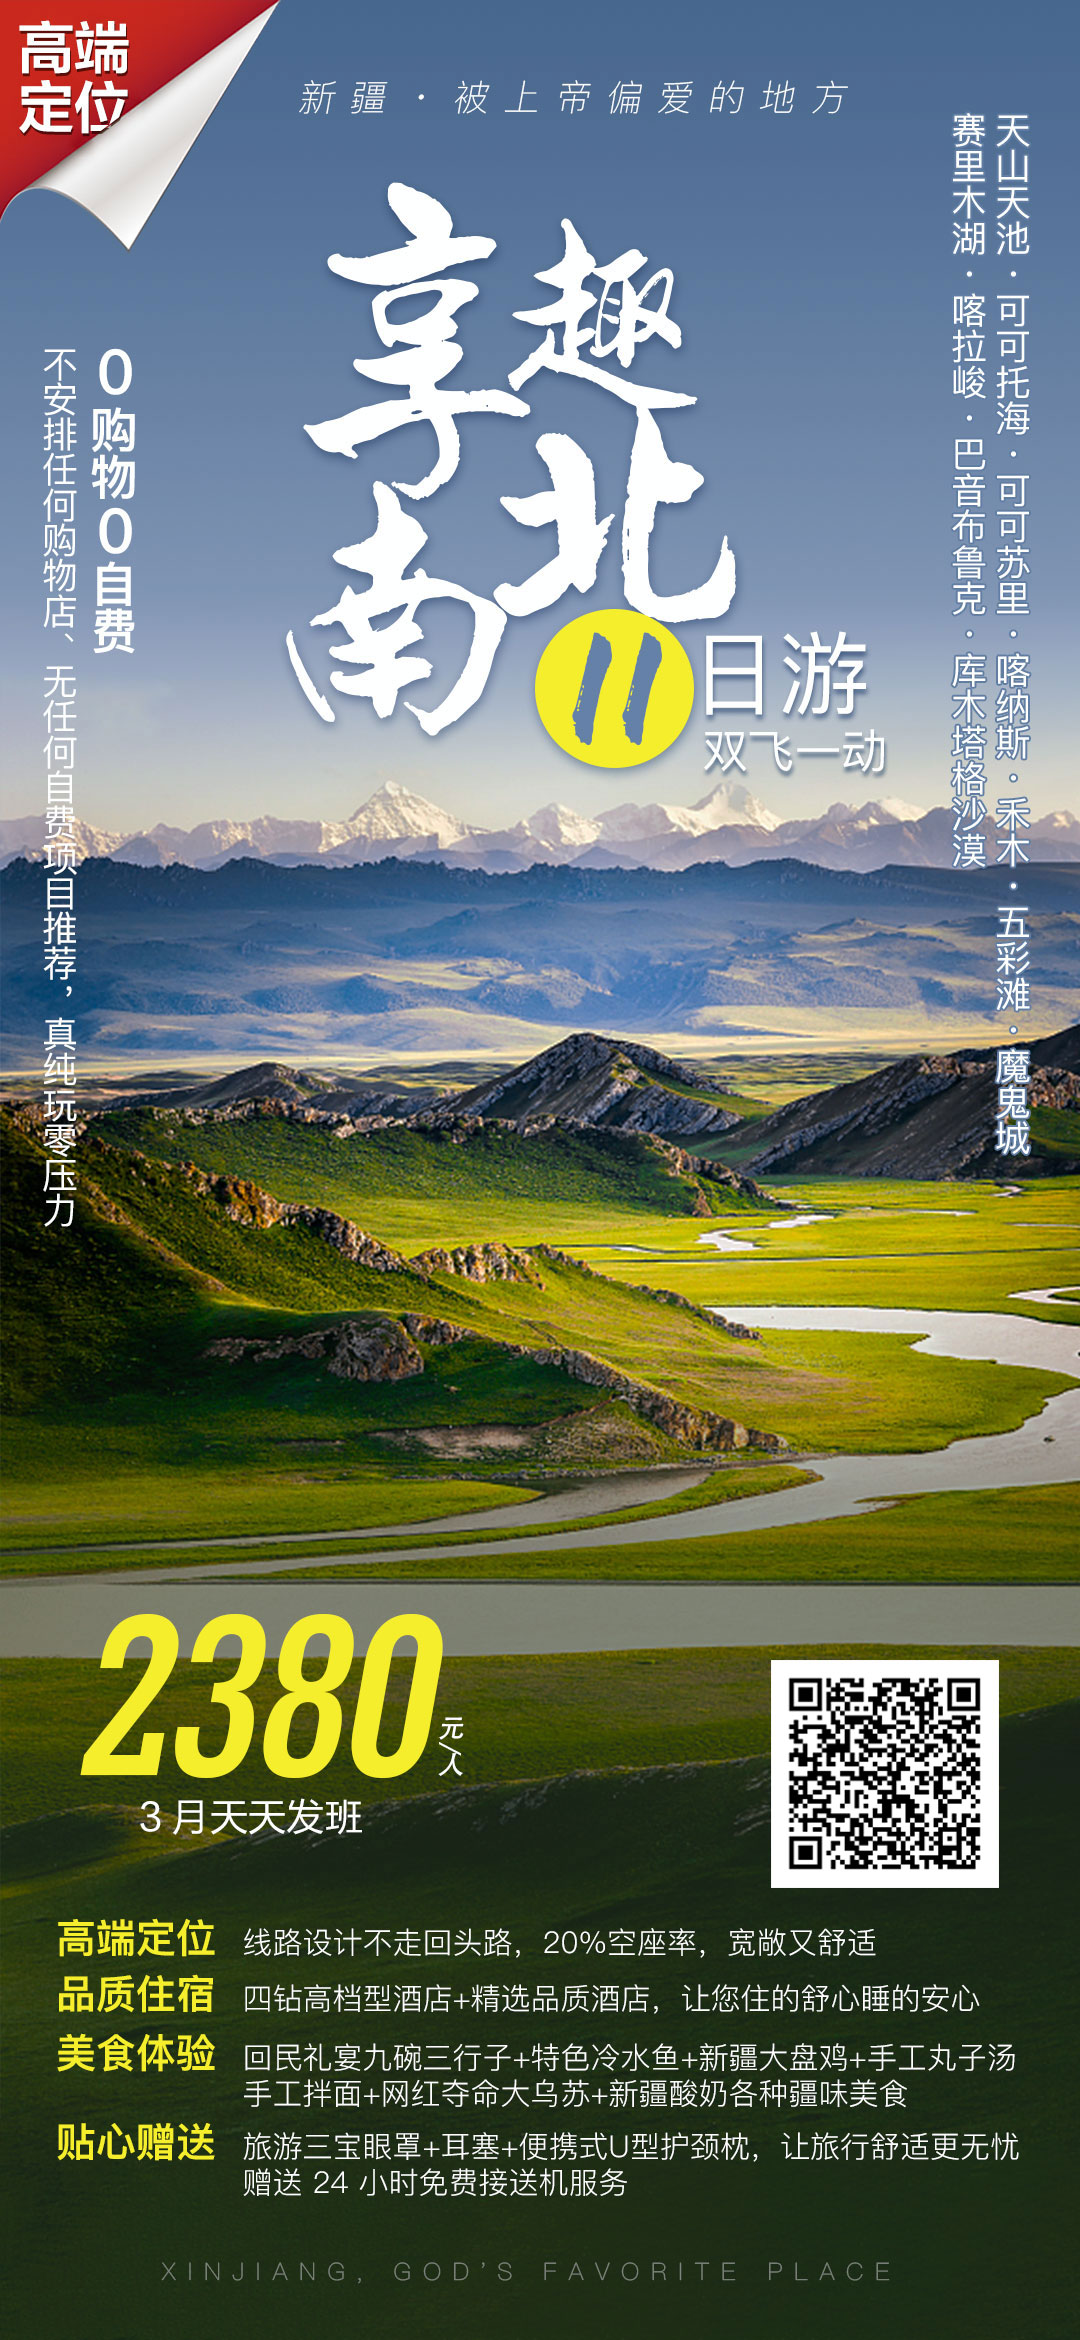 新疆风景旅游海报psd广告设计素材海报模板免费下载